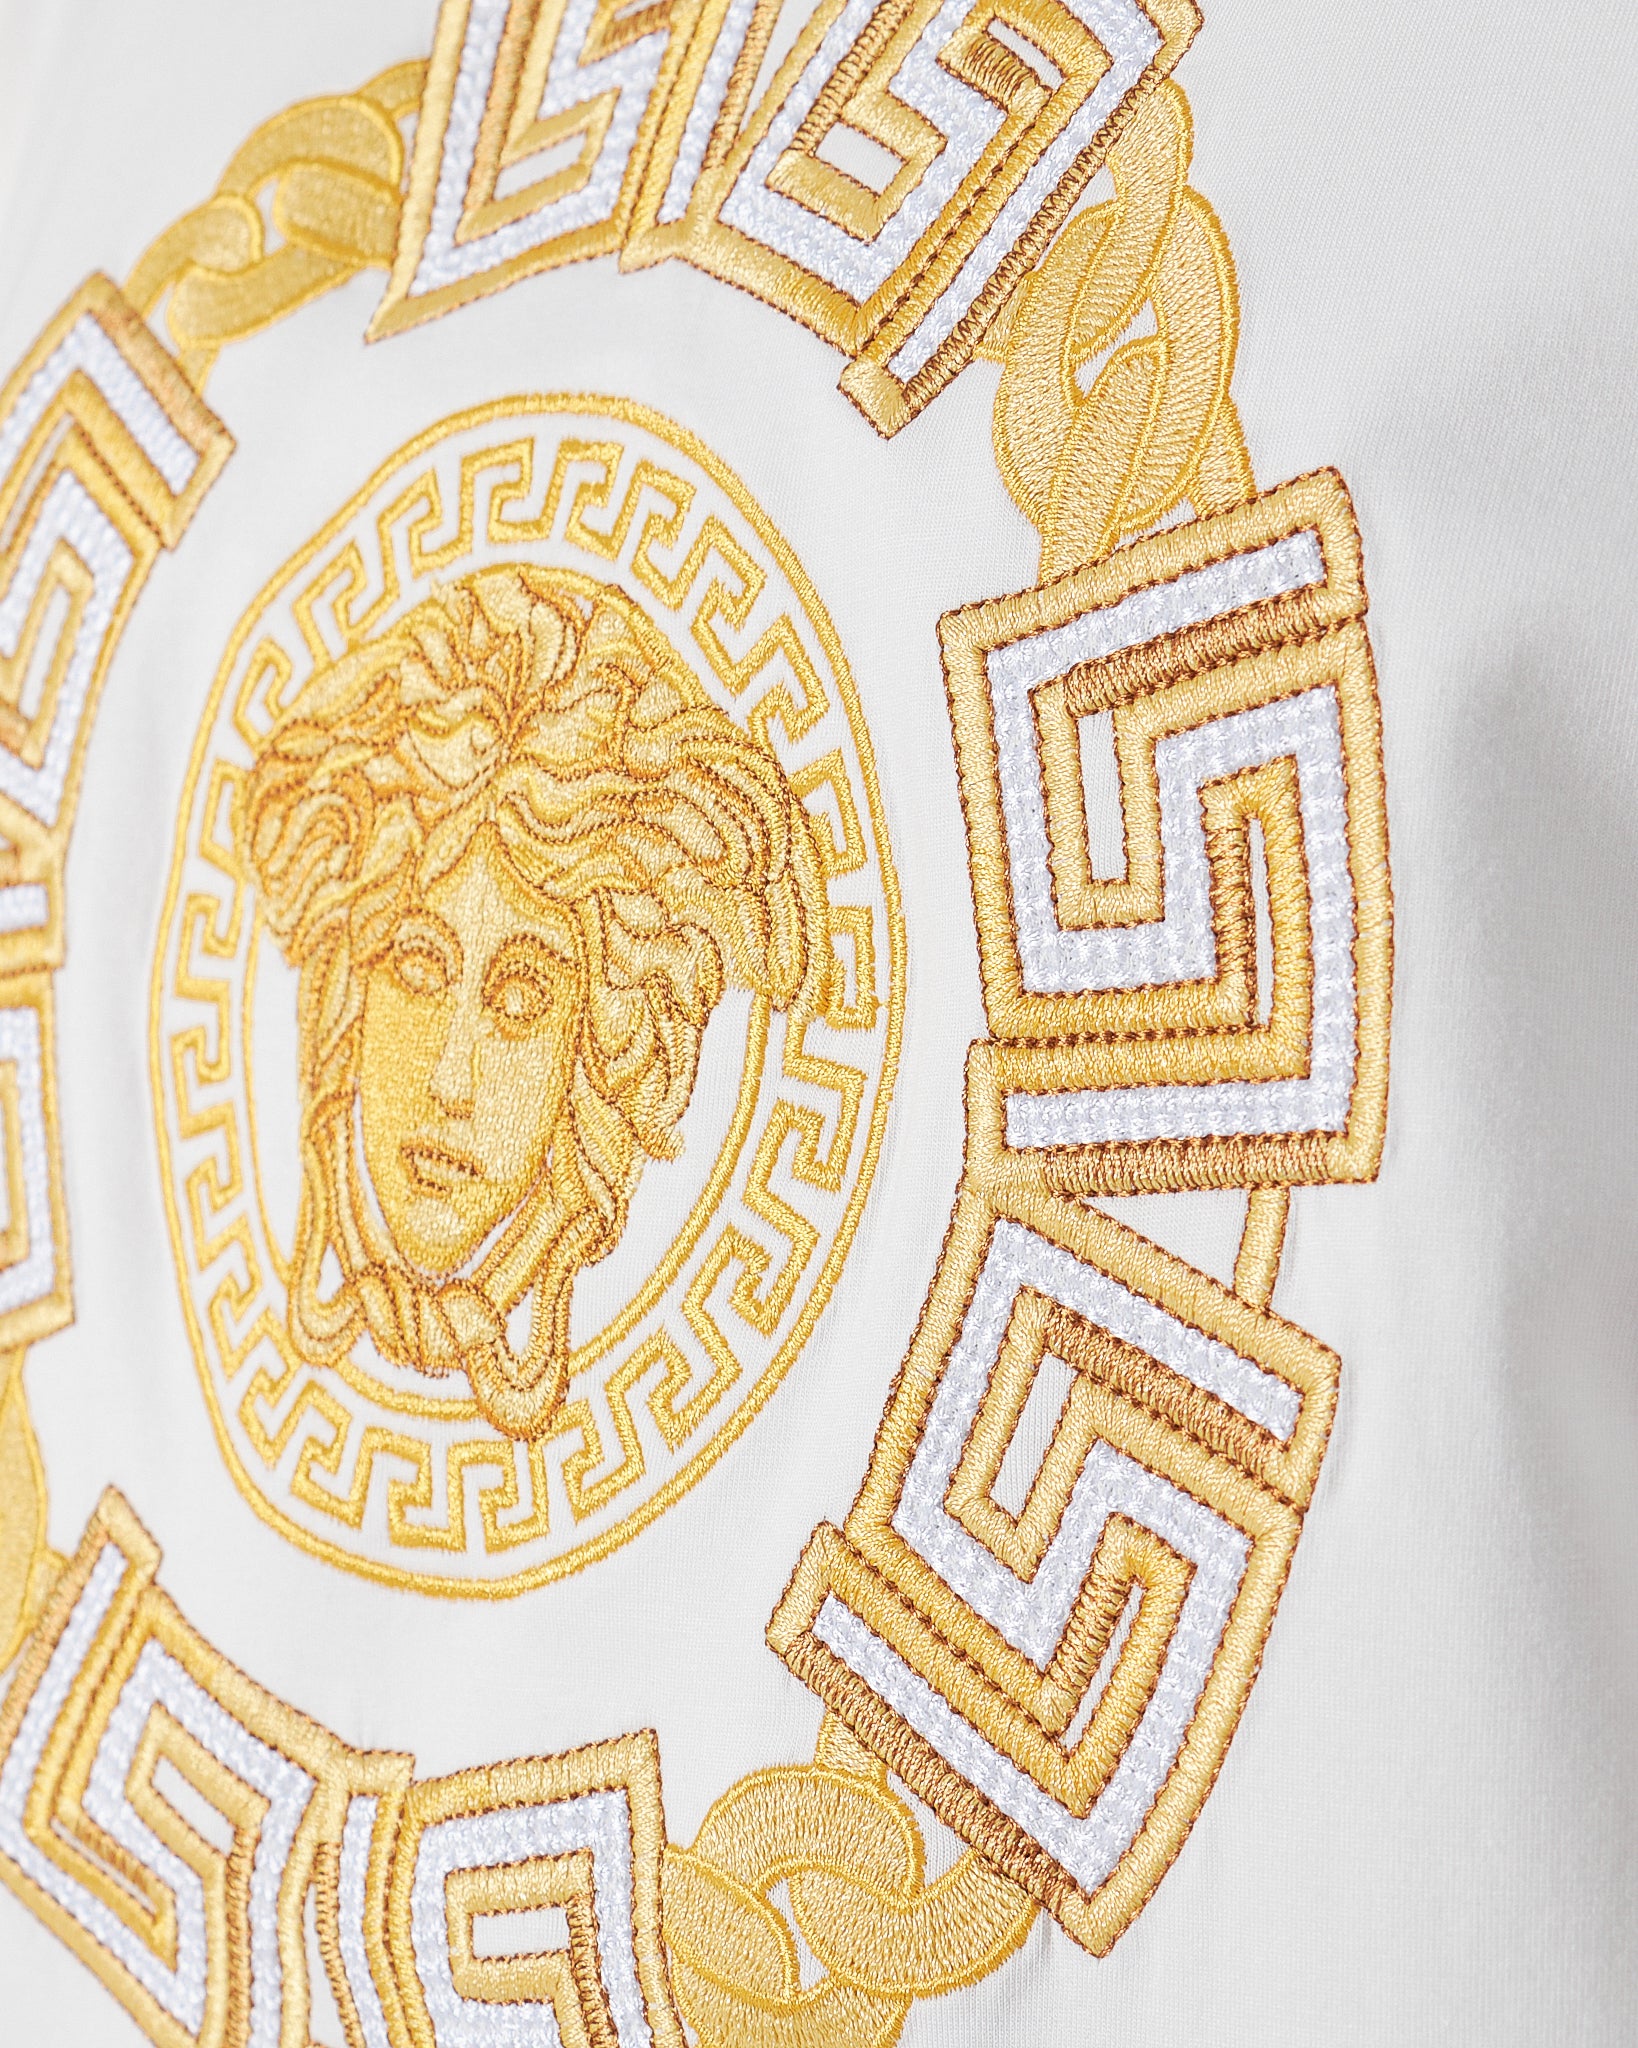 VER Medusa Gold Embroidered Men White T-Shirt 24.90